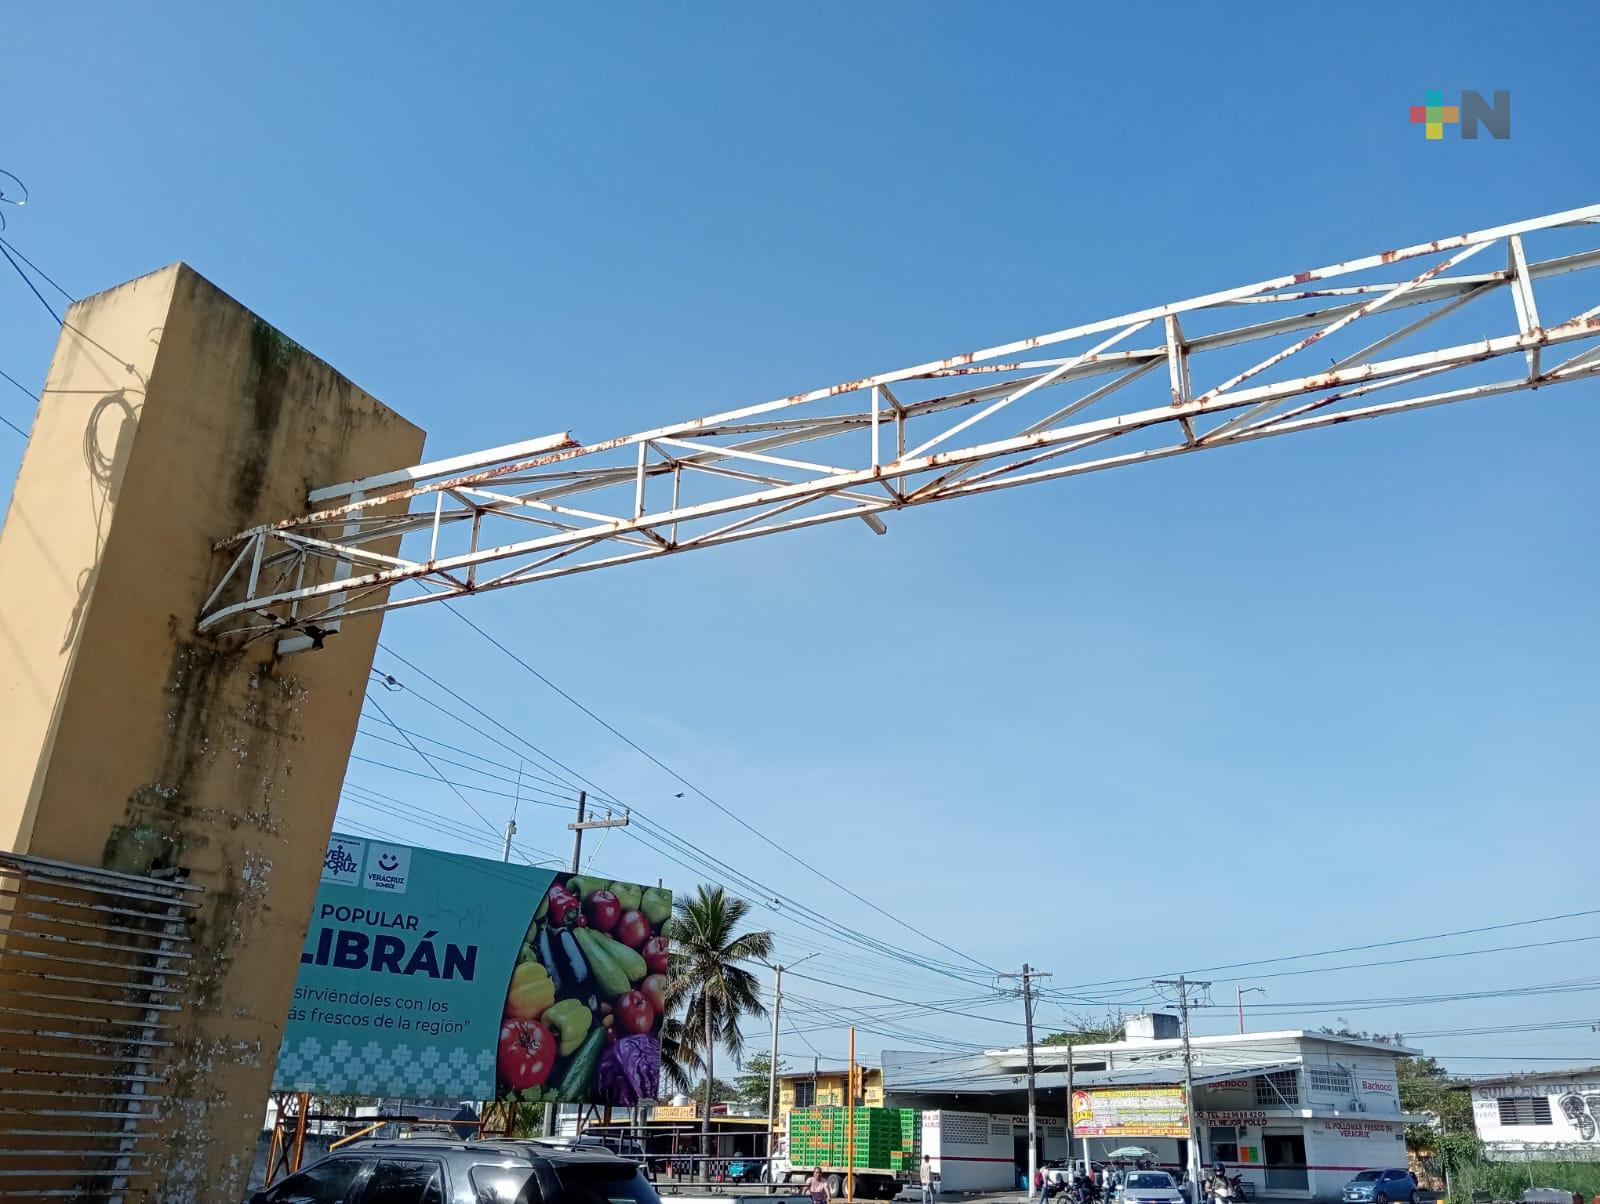 Riesgo en mercado de Veracruz puerto por estructura dañada